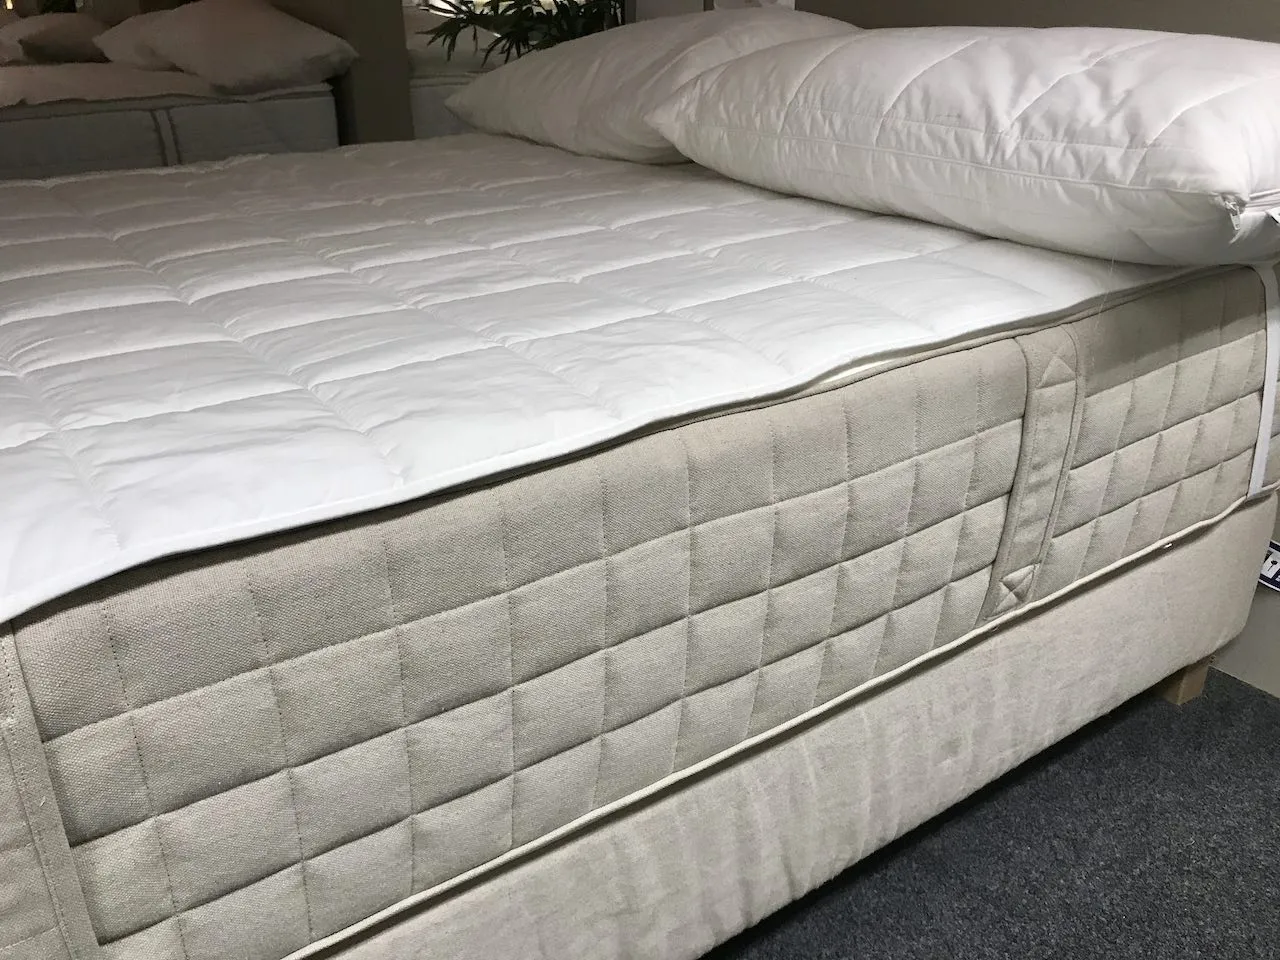 Hidrassund mattress in a showroom